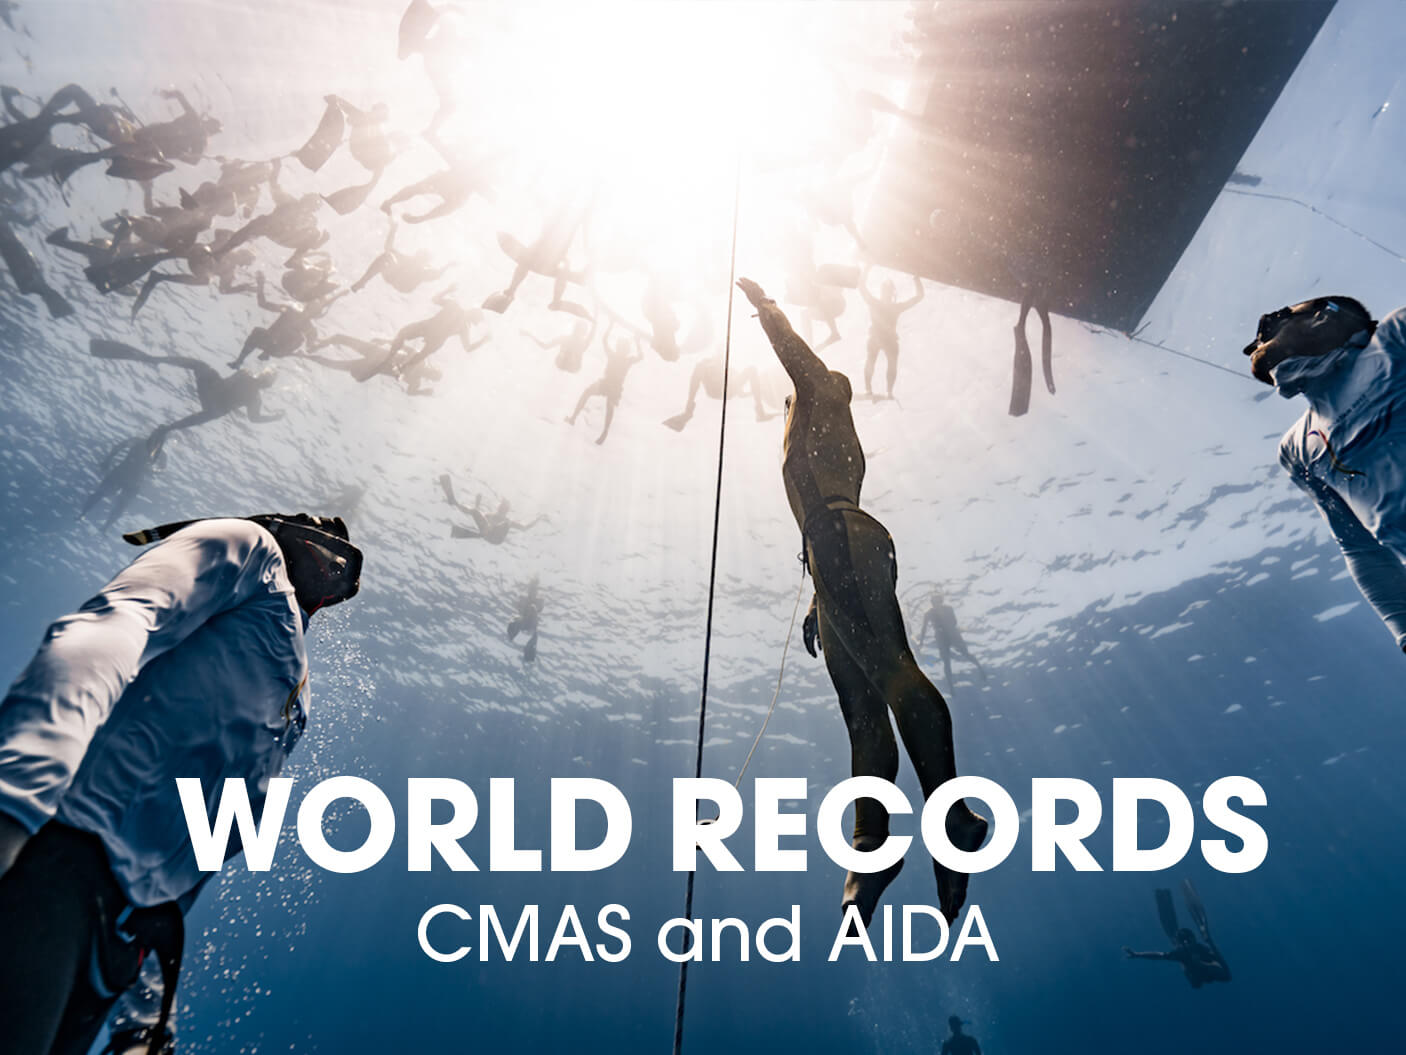 当前 CMAS 和 AIDA 自由潜水世界纪录